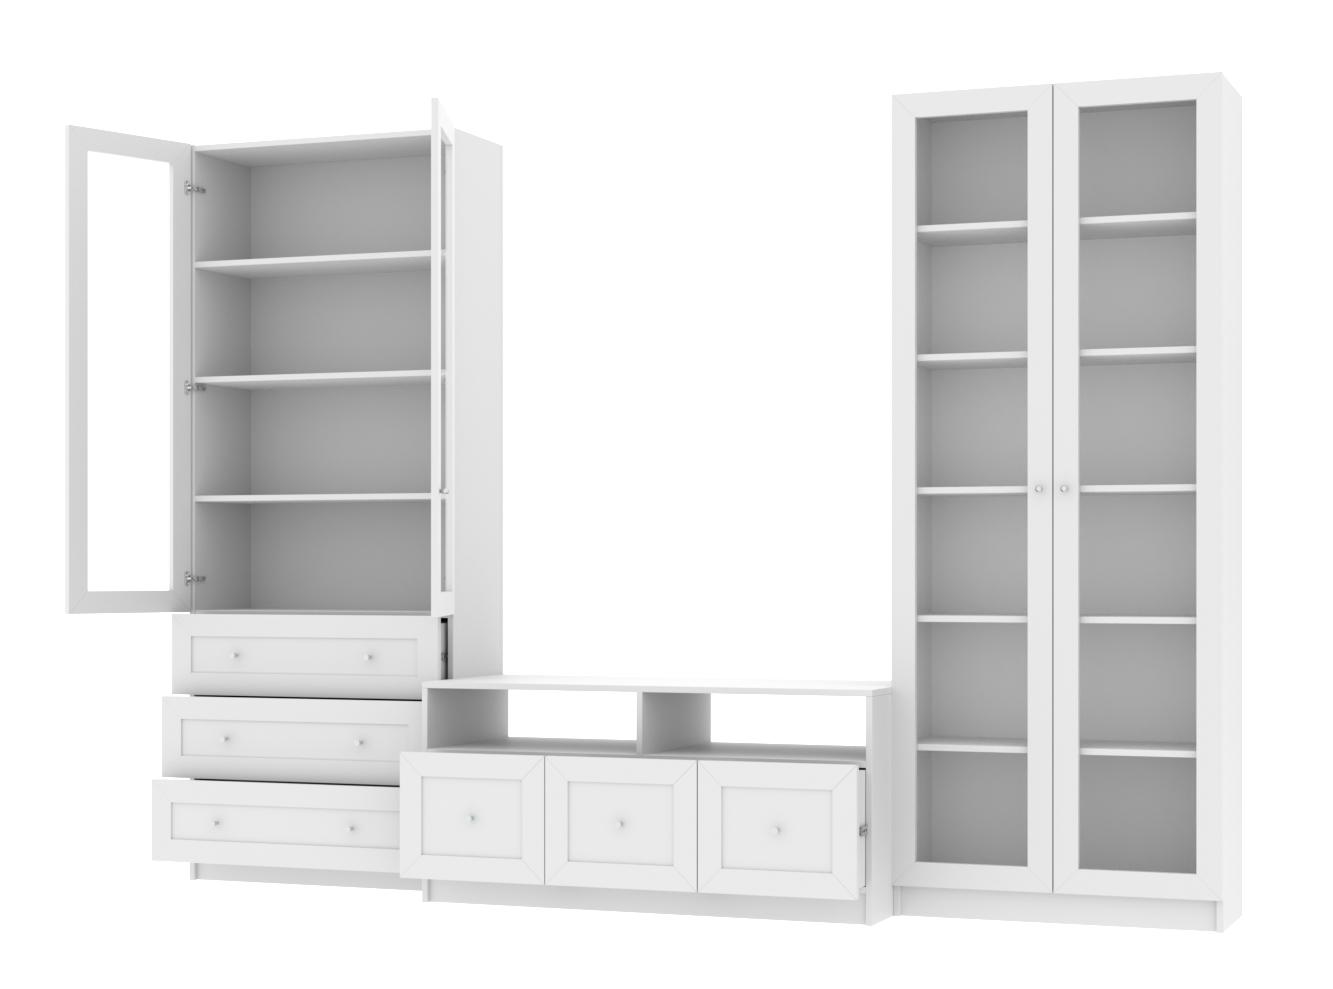  Книжный шкаф Билли 374 white ИКЕА (IKEA) с тумбой под телевизор изображение товара